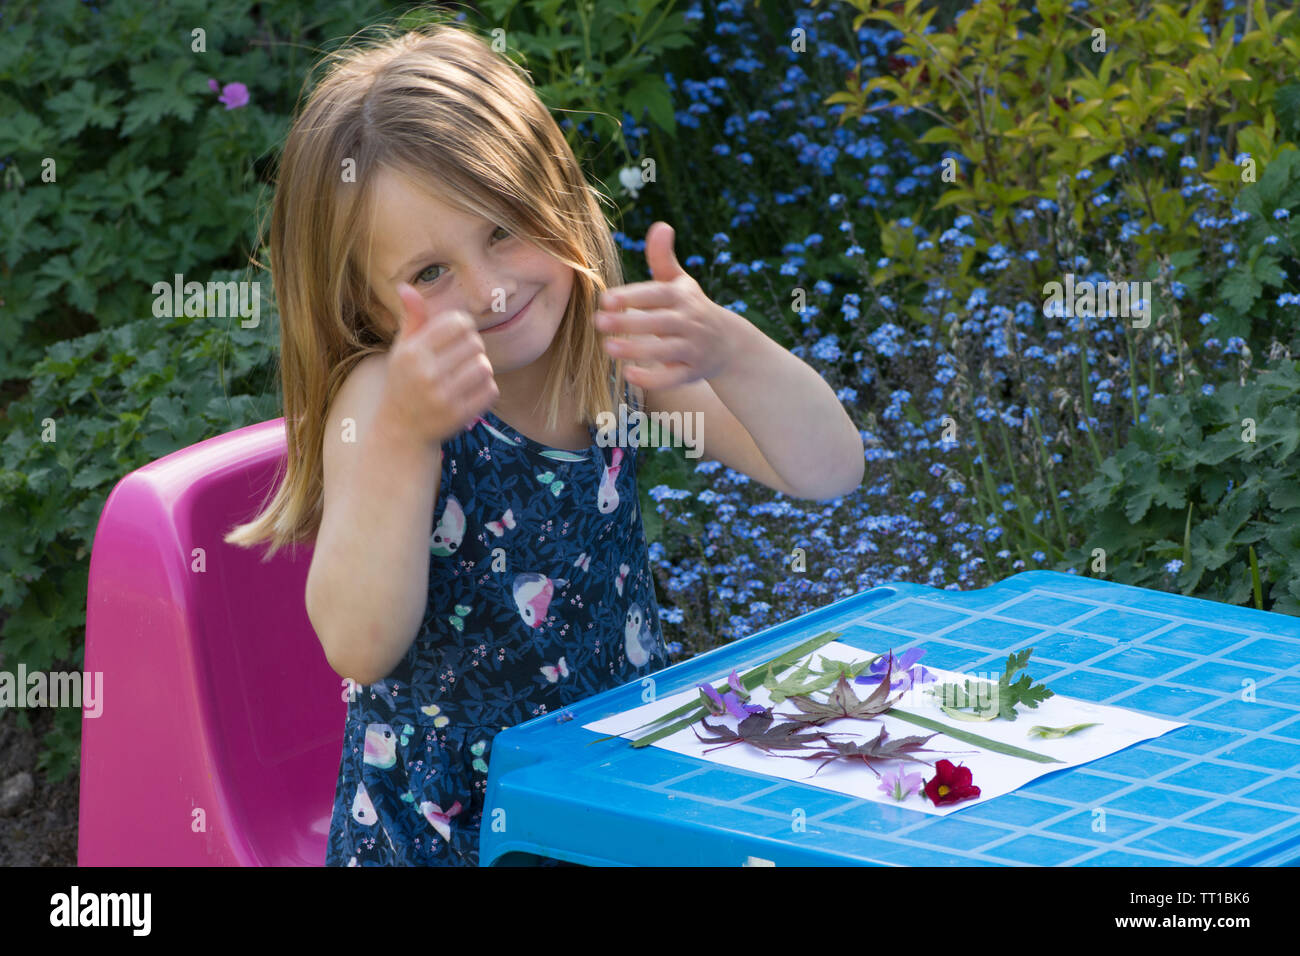 Trois ans, fille giving Thumbs up assis à une petite table, fier d'une photo faite à partir de fleurs et de feuilles de papier collées sur la nature, l'artisanat d'art Banque D'Images